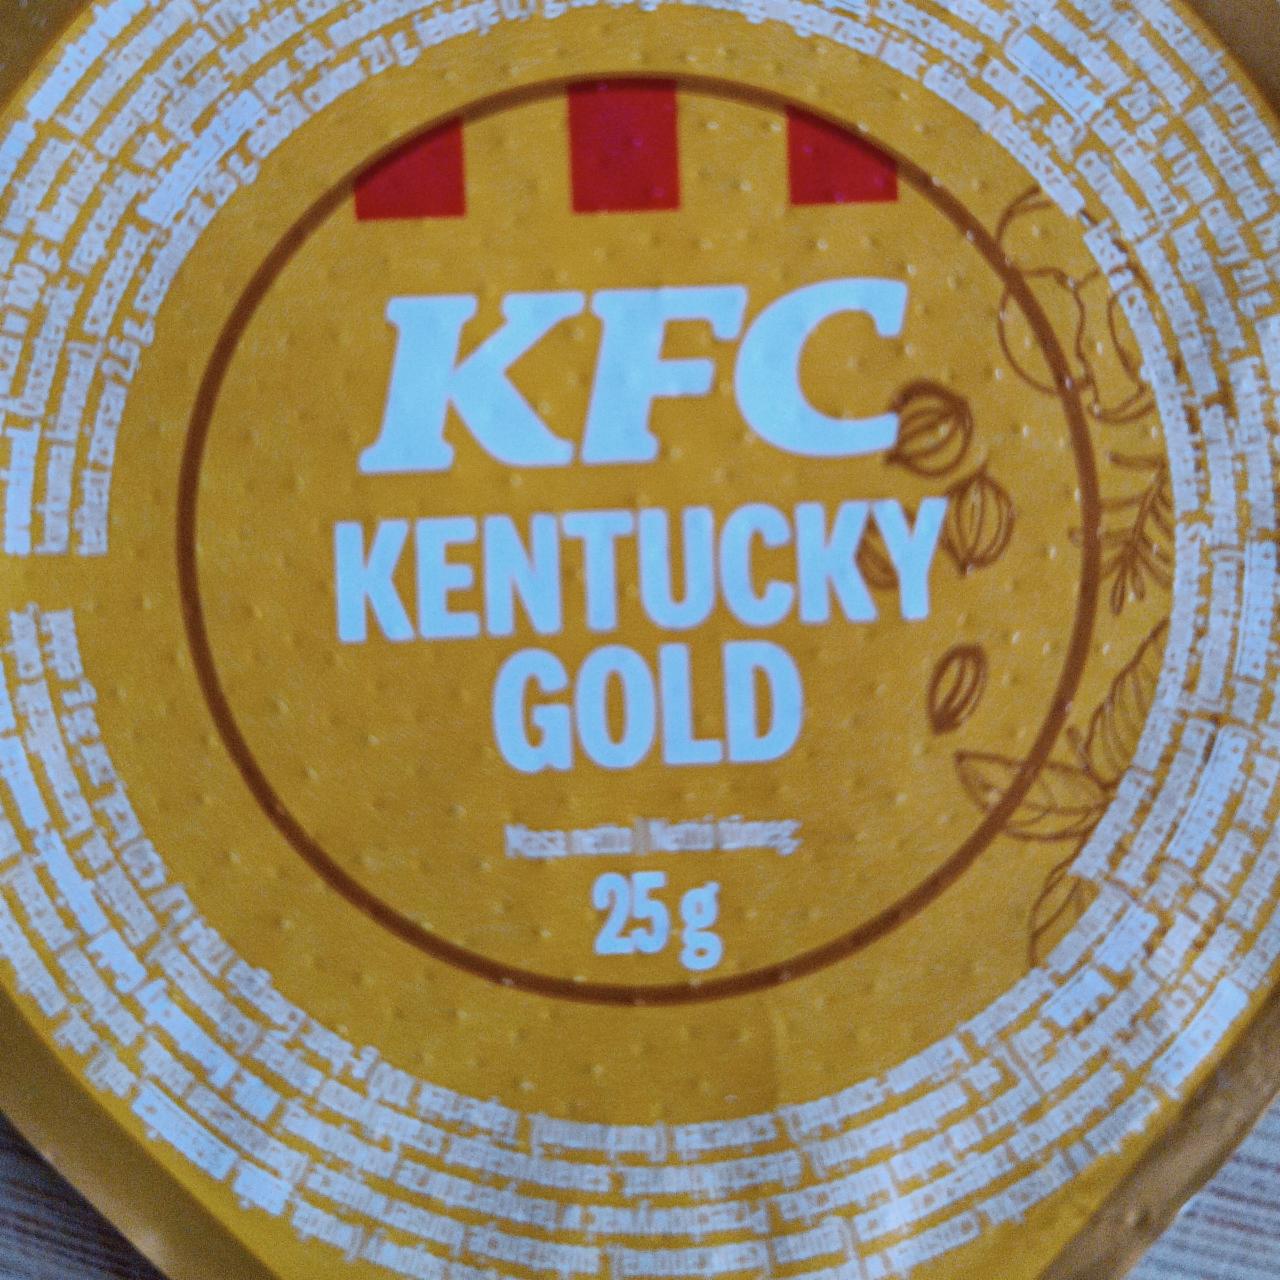 Zdjęcia - Kentucky Gold KFC